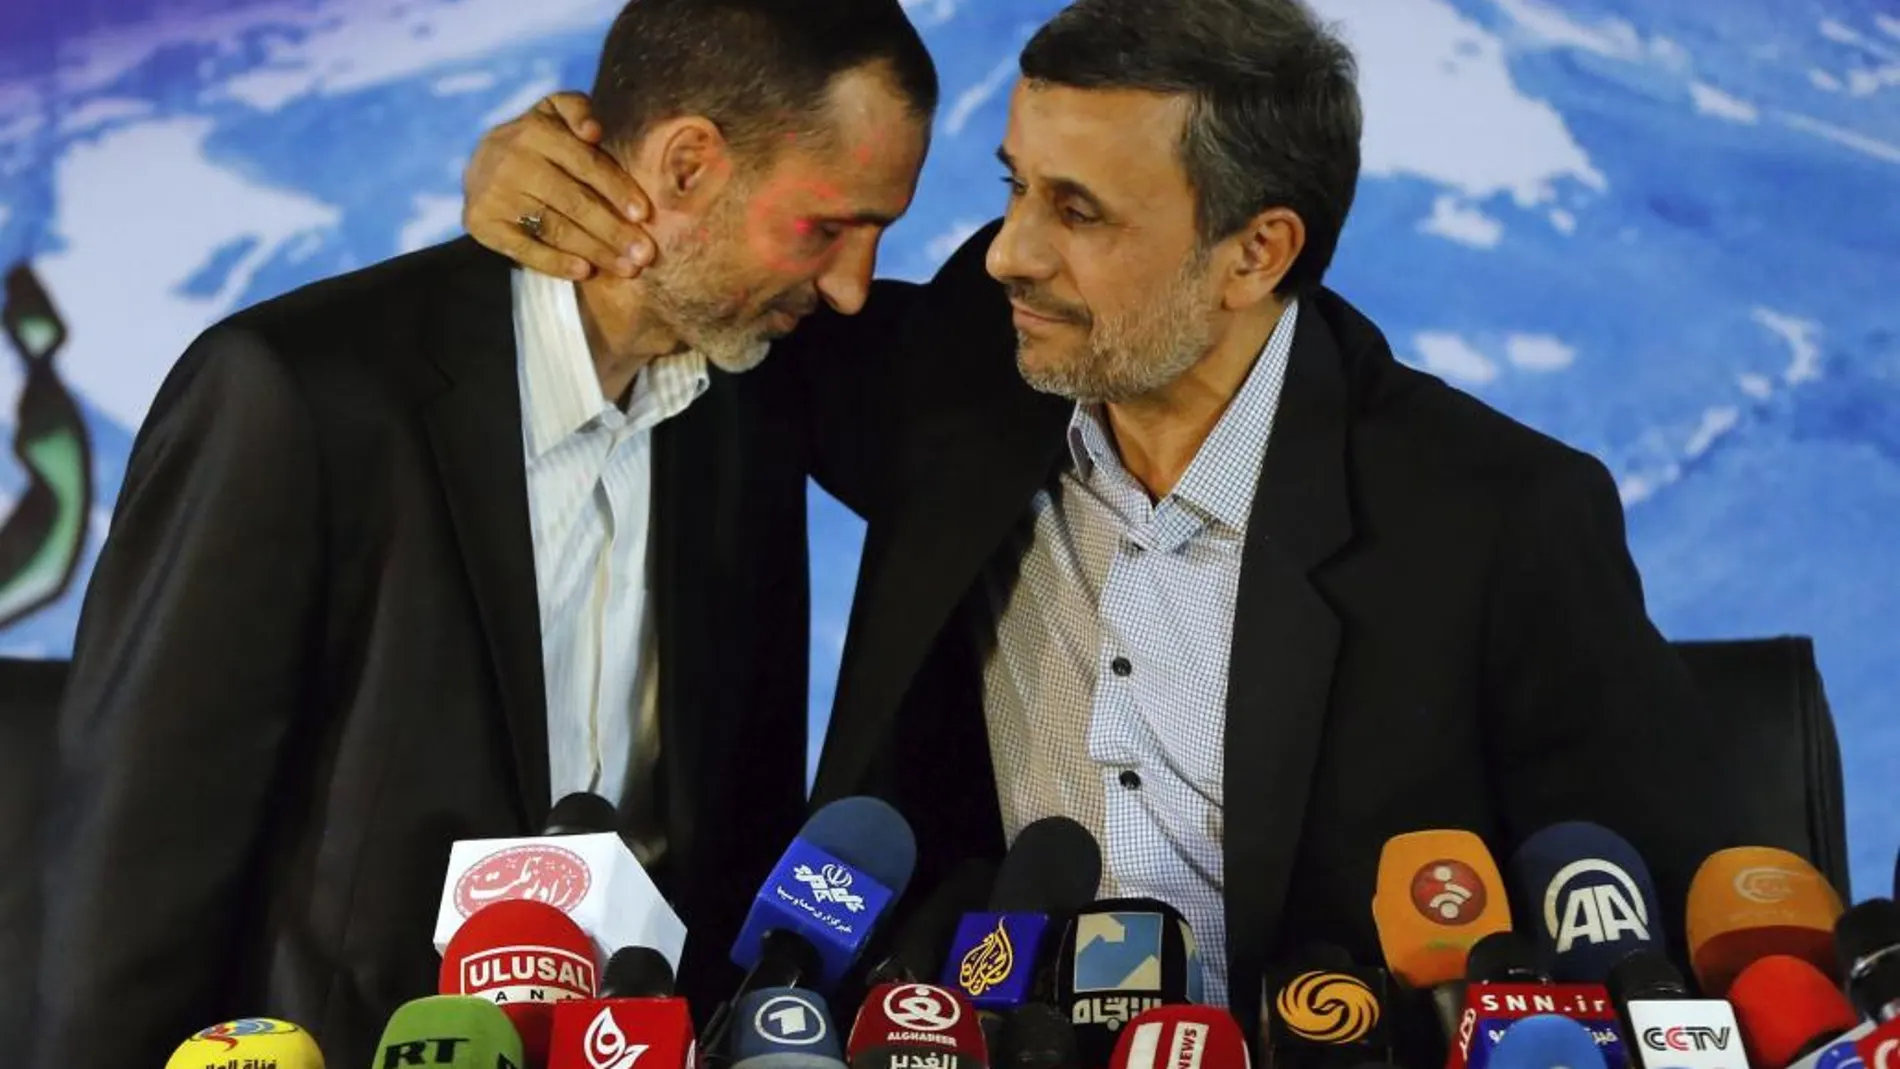 El expresidente iraní, Mahmud Ahmadineyad (d), saluda al candidato a la presidencia, Hamid Baghaei (i), durante una rueda de prensa en Teherán, el pasado 5 de abril